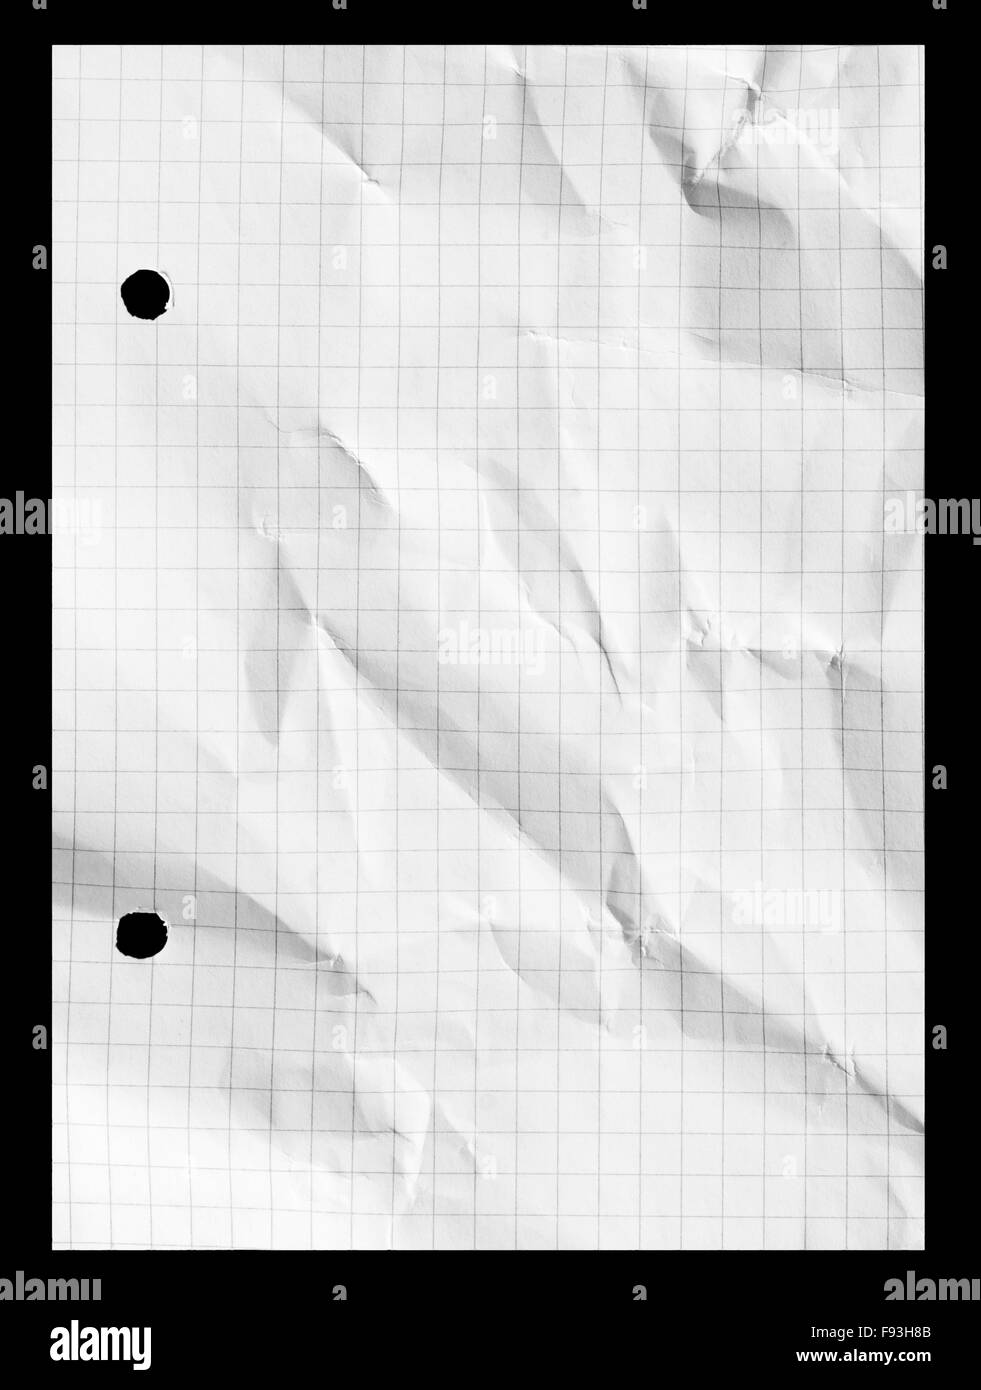 Grille graphique papier quadrillé notebook with copy space Banque D'Images